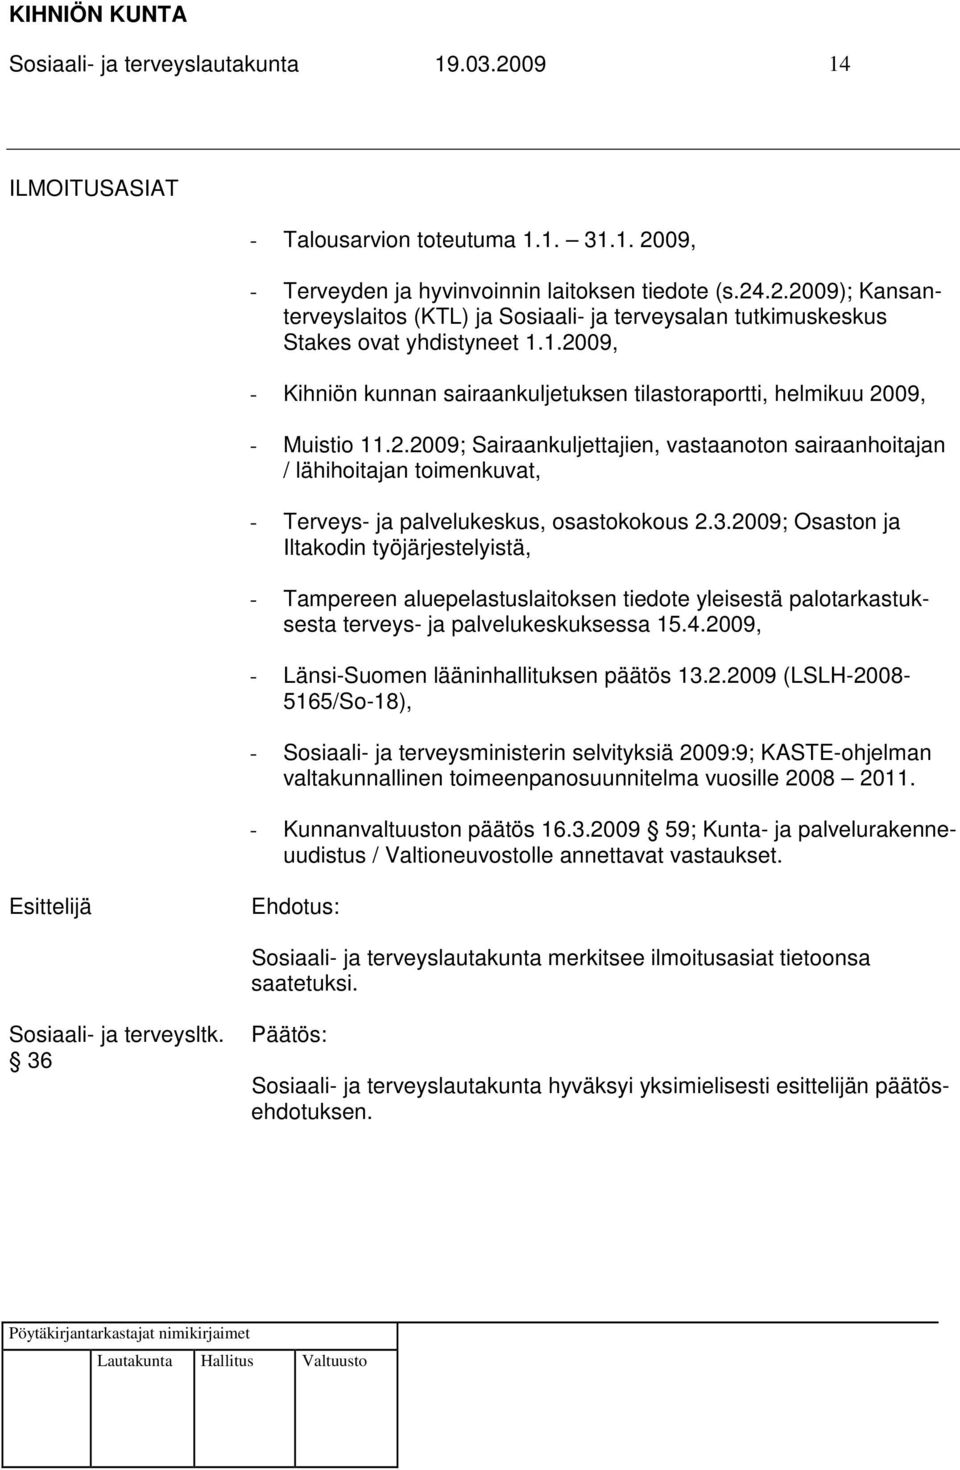 3.2009; Osaston ja Iltakodin työjärjestelyistä, - Tampereen aluepelastuslaitoksen tiedote yleisestä palotarkastuksesta terveys- ja palvelukeskuksessa 15.4.